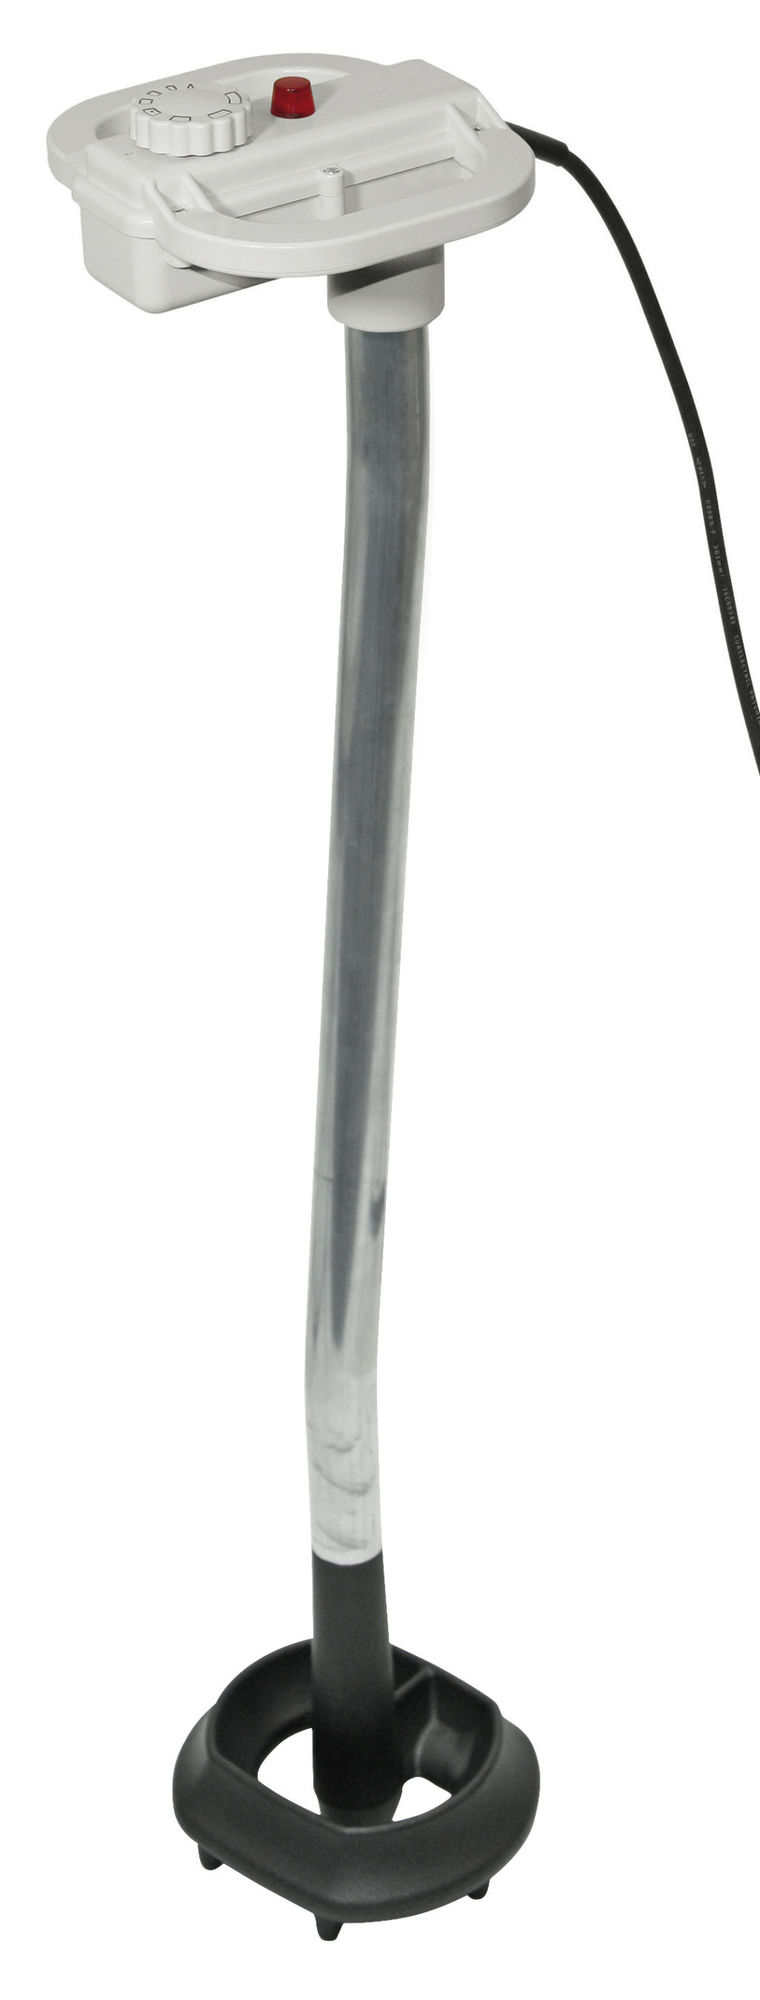 Kälbermilcherwärmer FastHeat, 1700 Watt, 81,5 cm, weiß